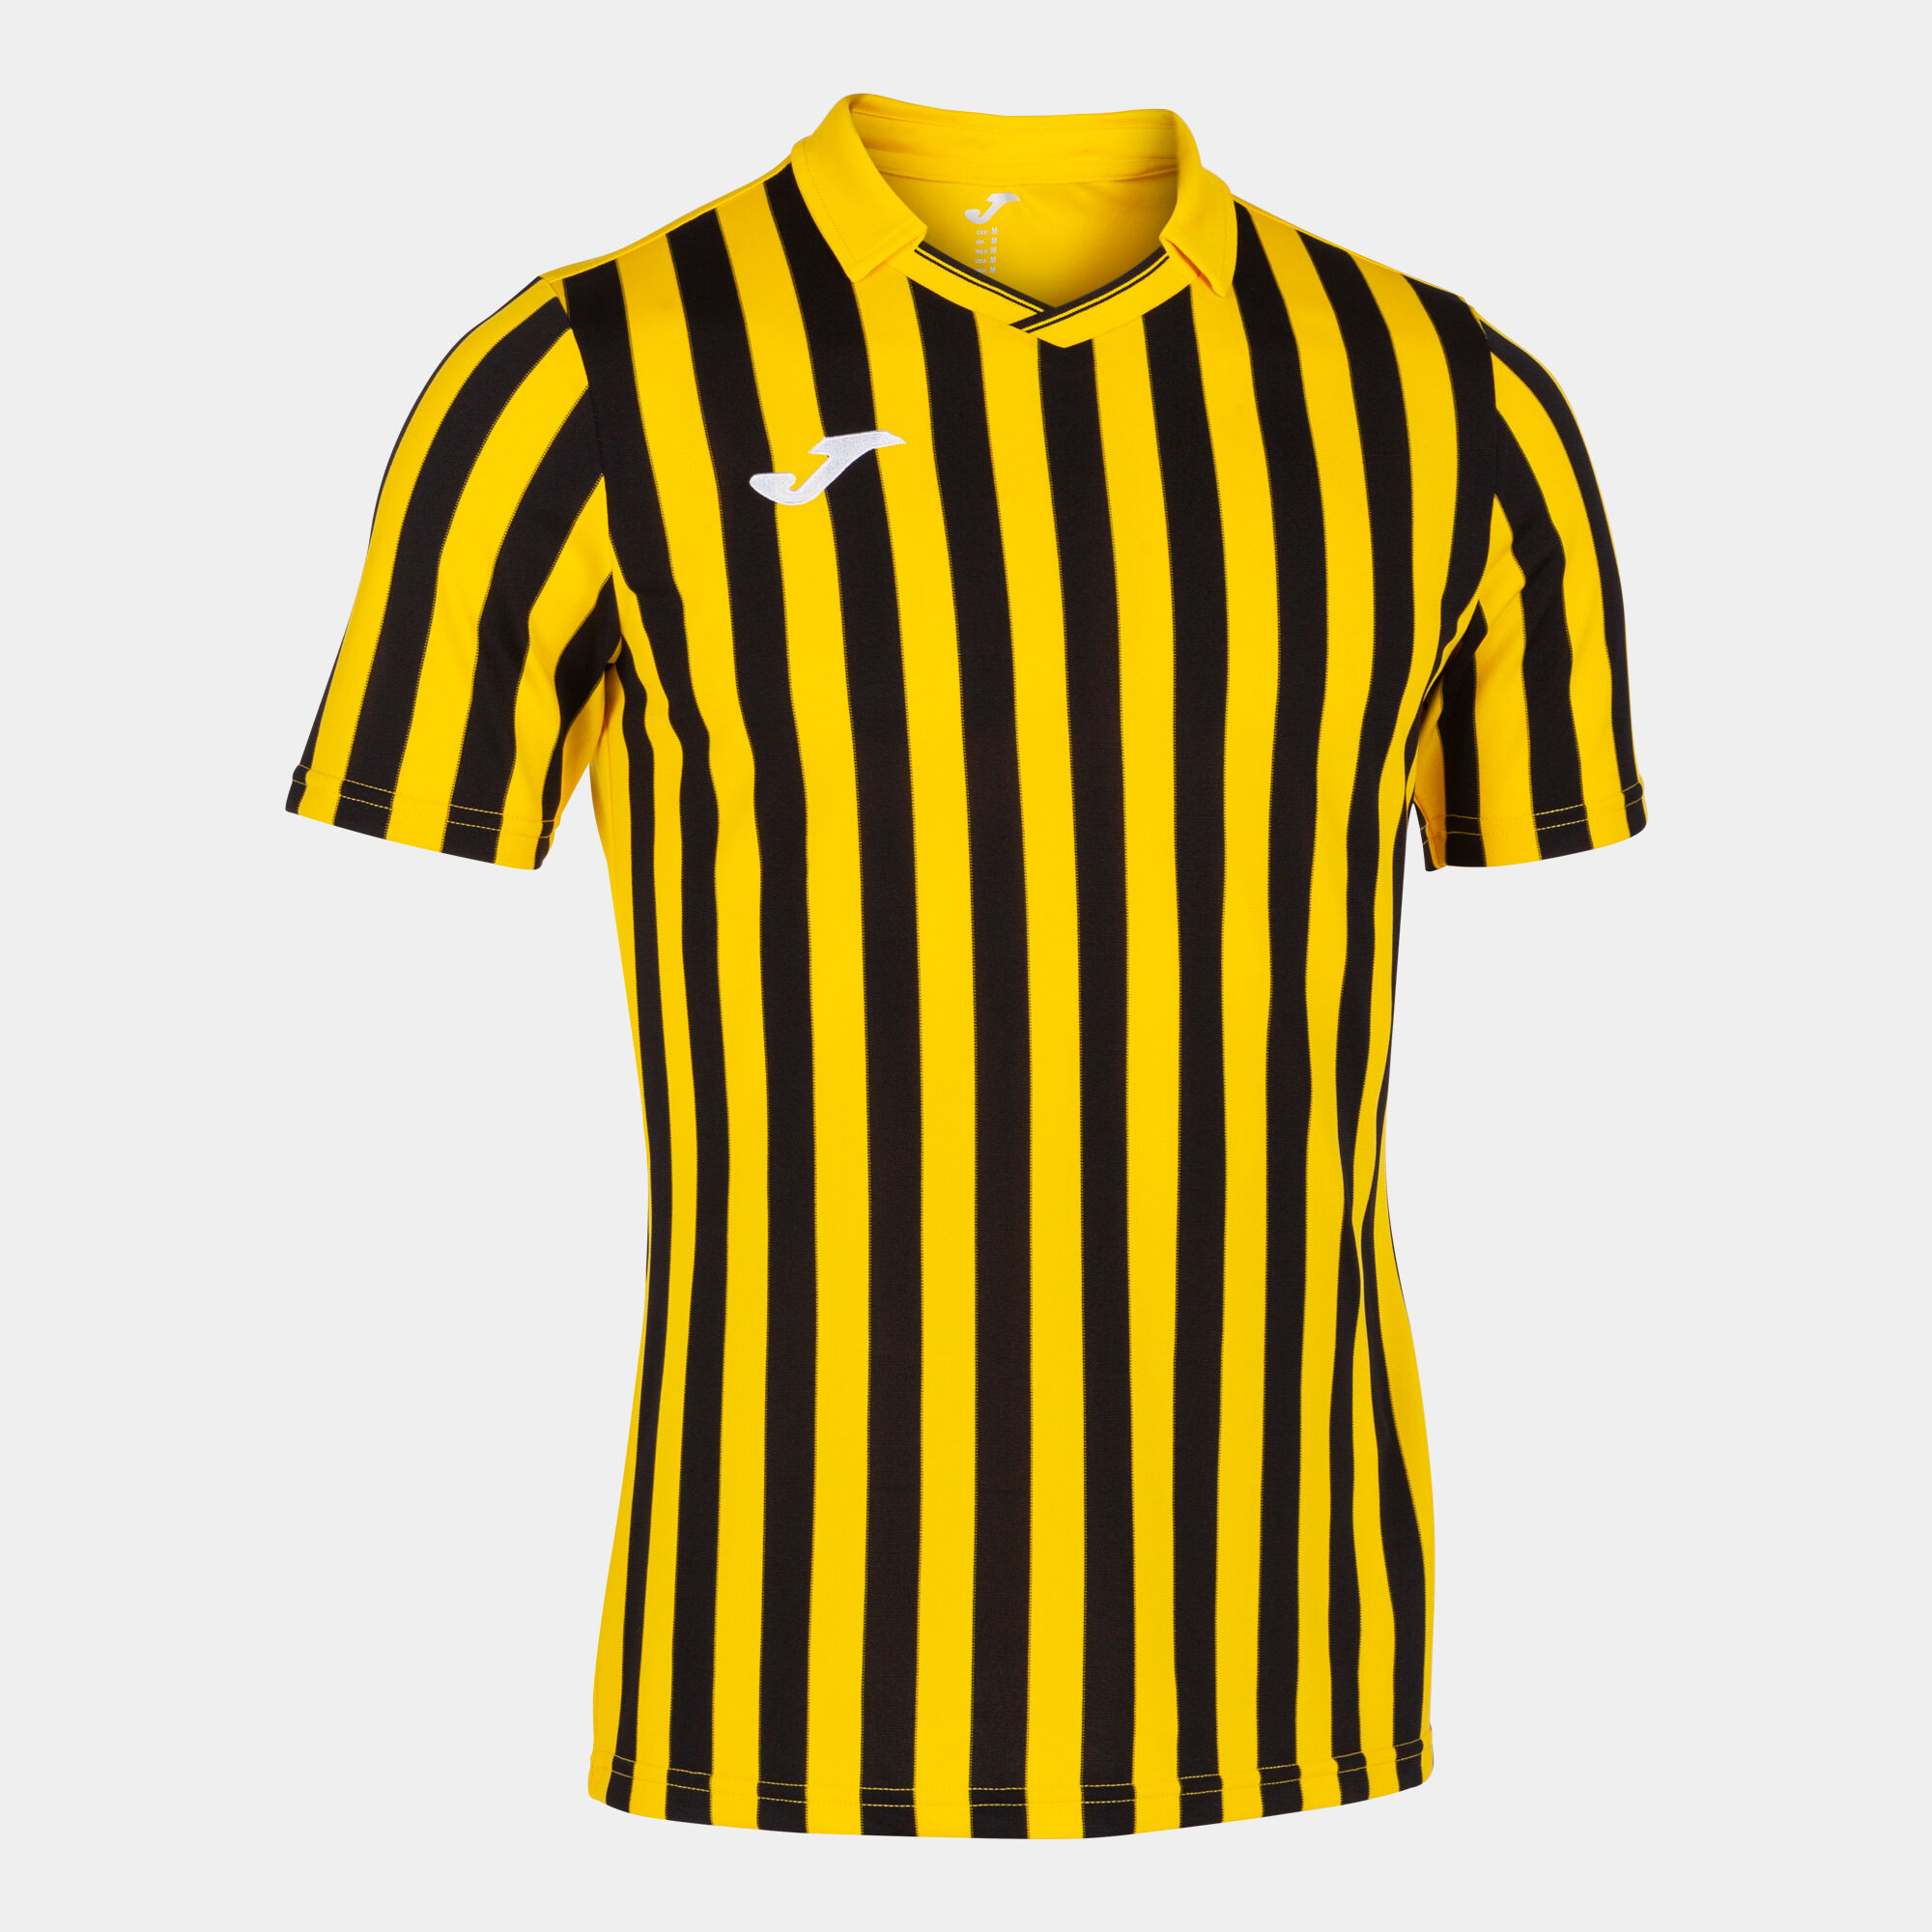 Kurzarmshirt mann Copa II gelb schwarz